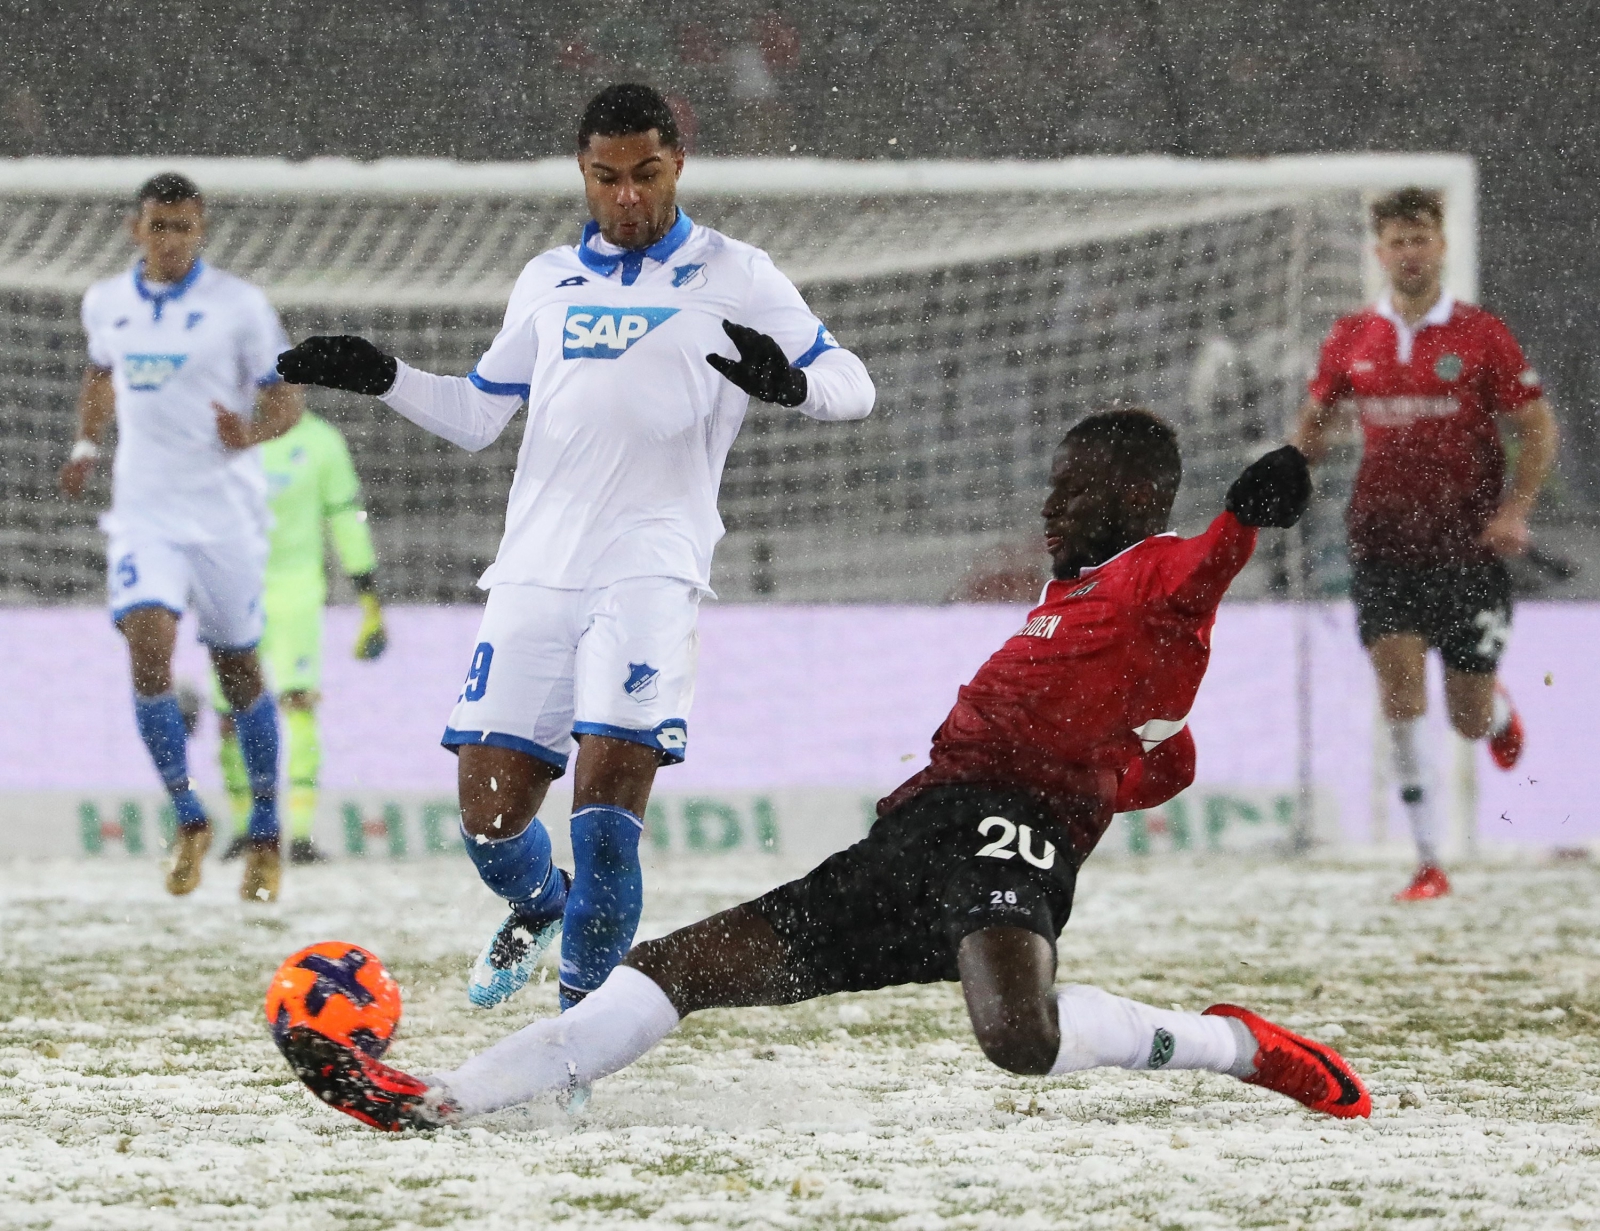 Niemcy - śnieg podczas meczu Bundesligi  EPA/FOCKE STRANGMANN 